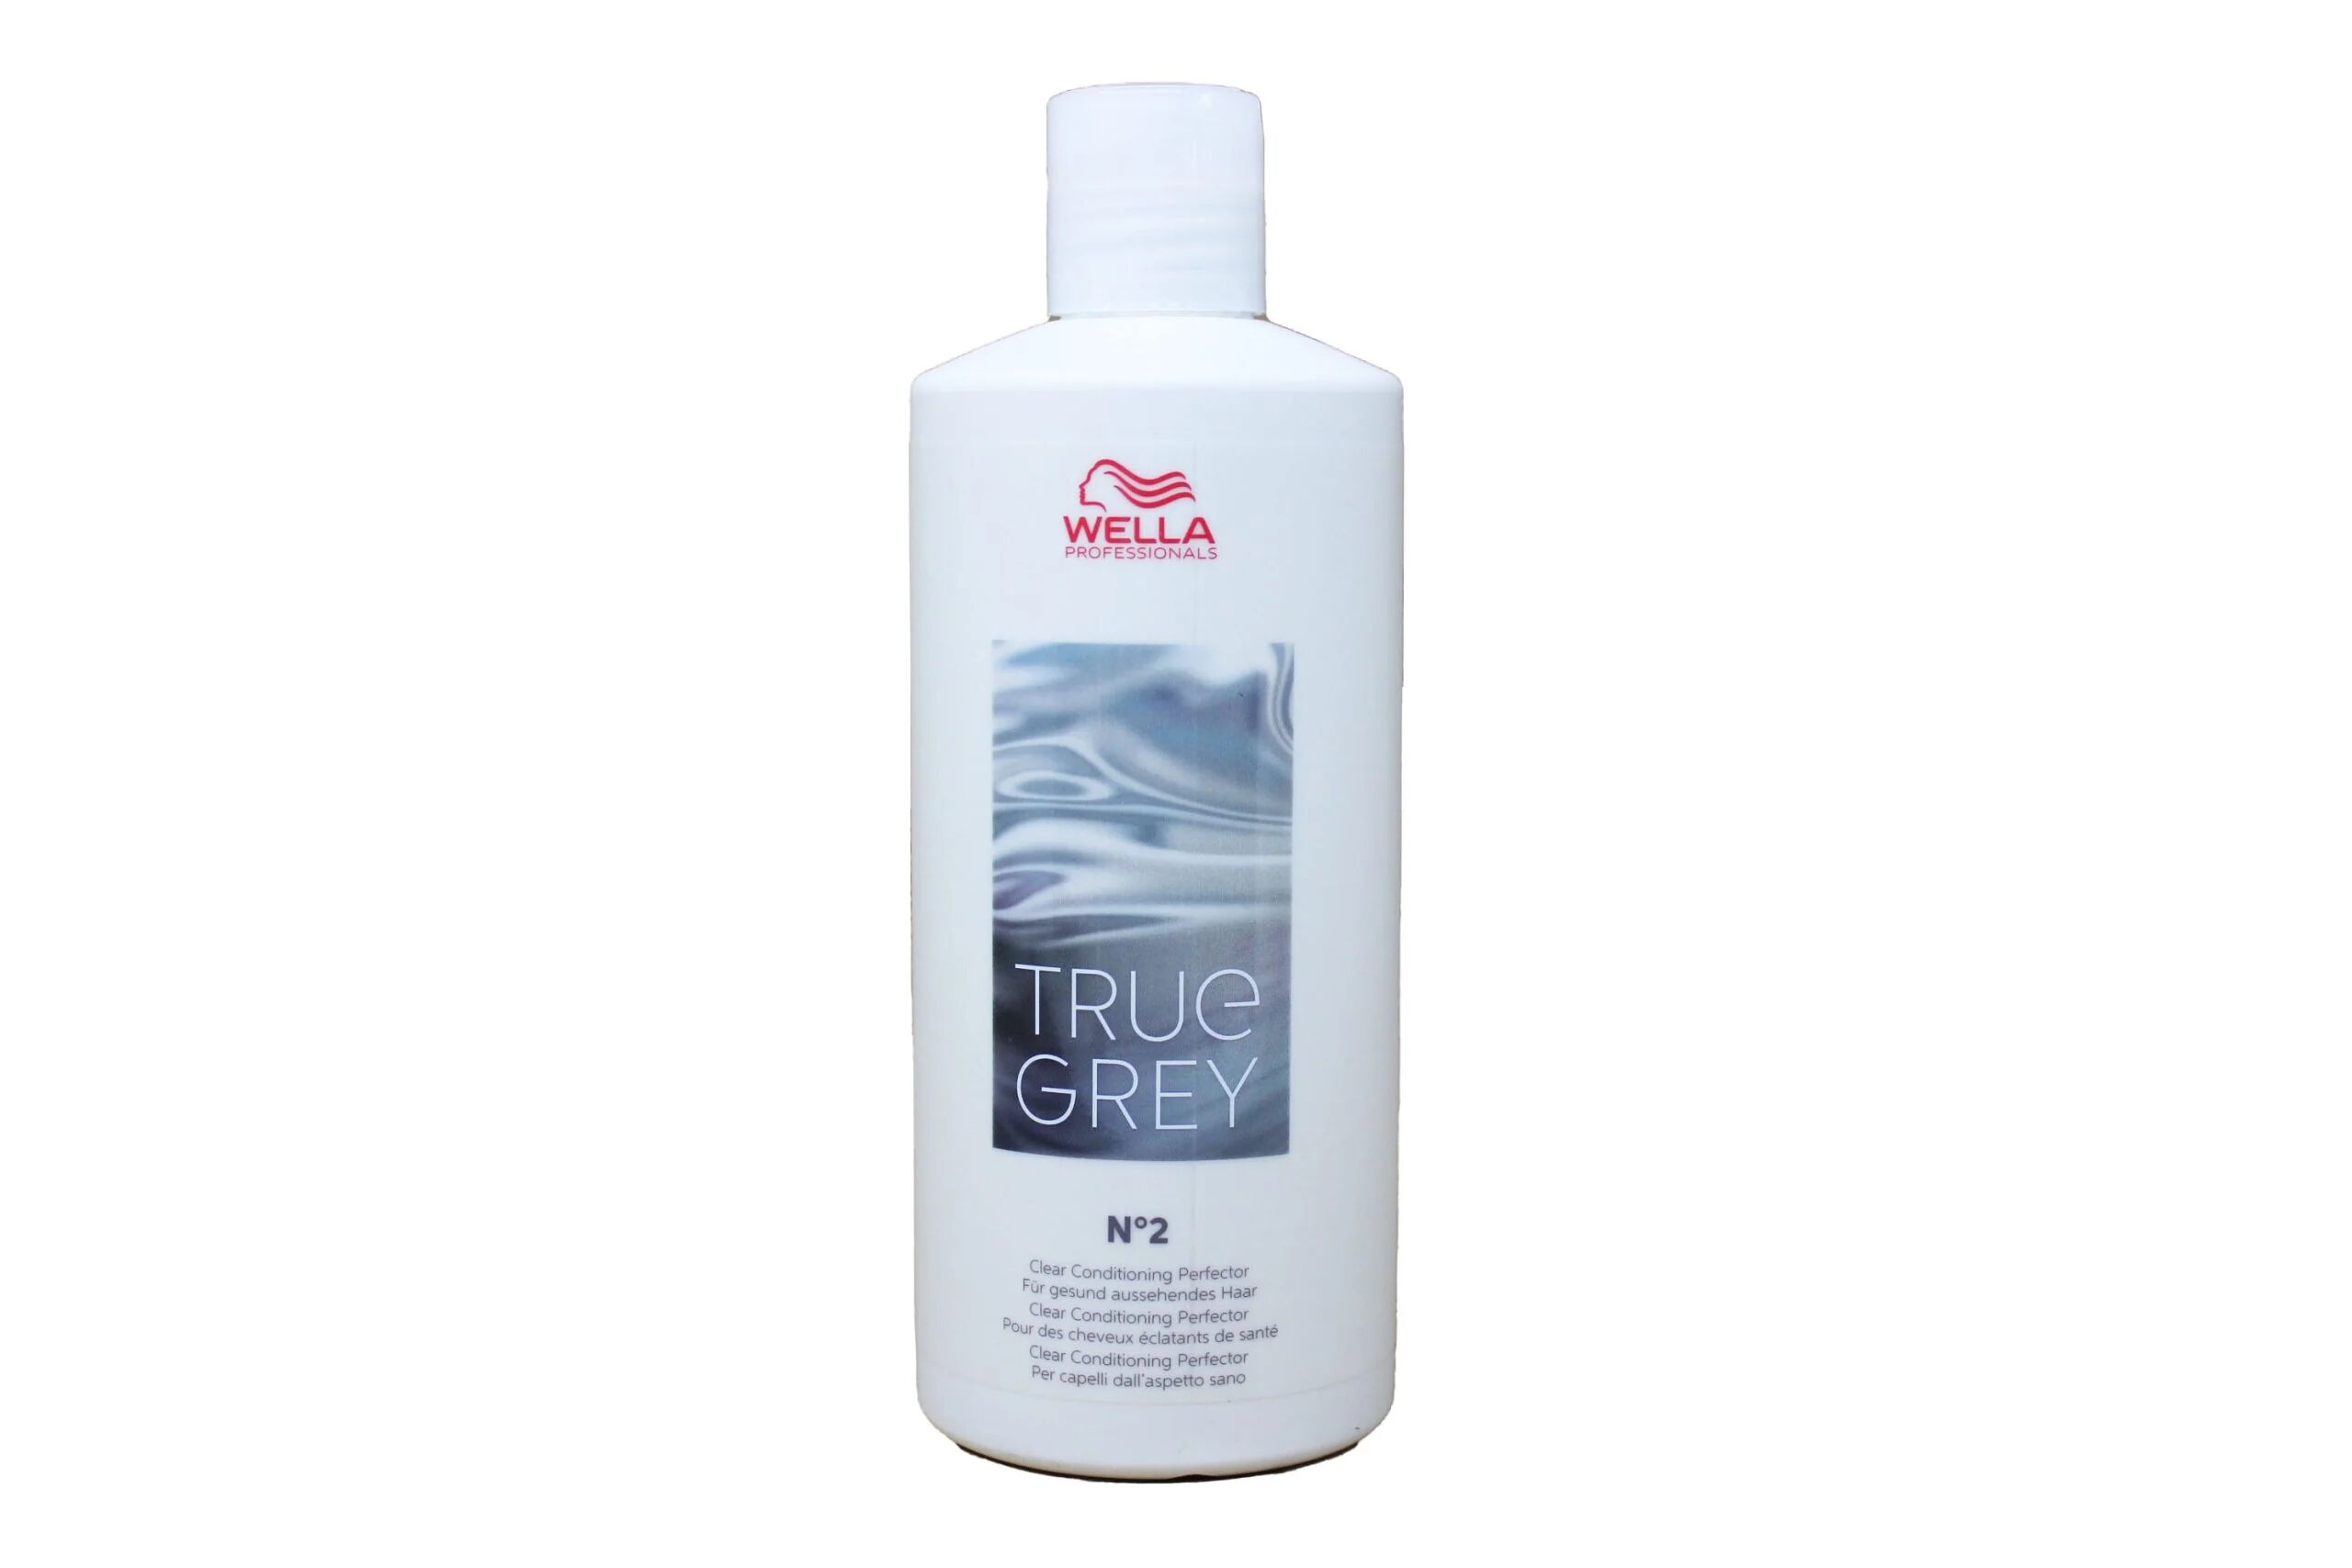 Wella True Grey Clear Conditioning Perfector N.2 500 ml